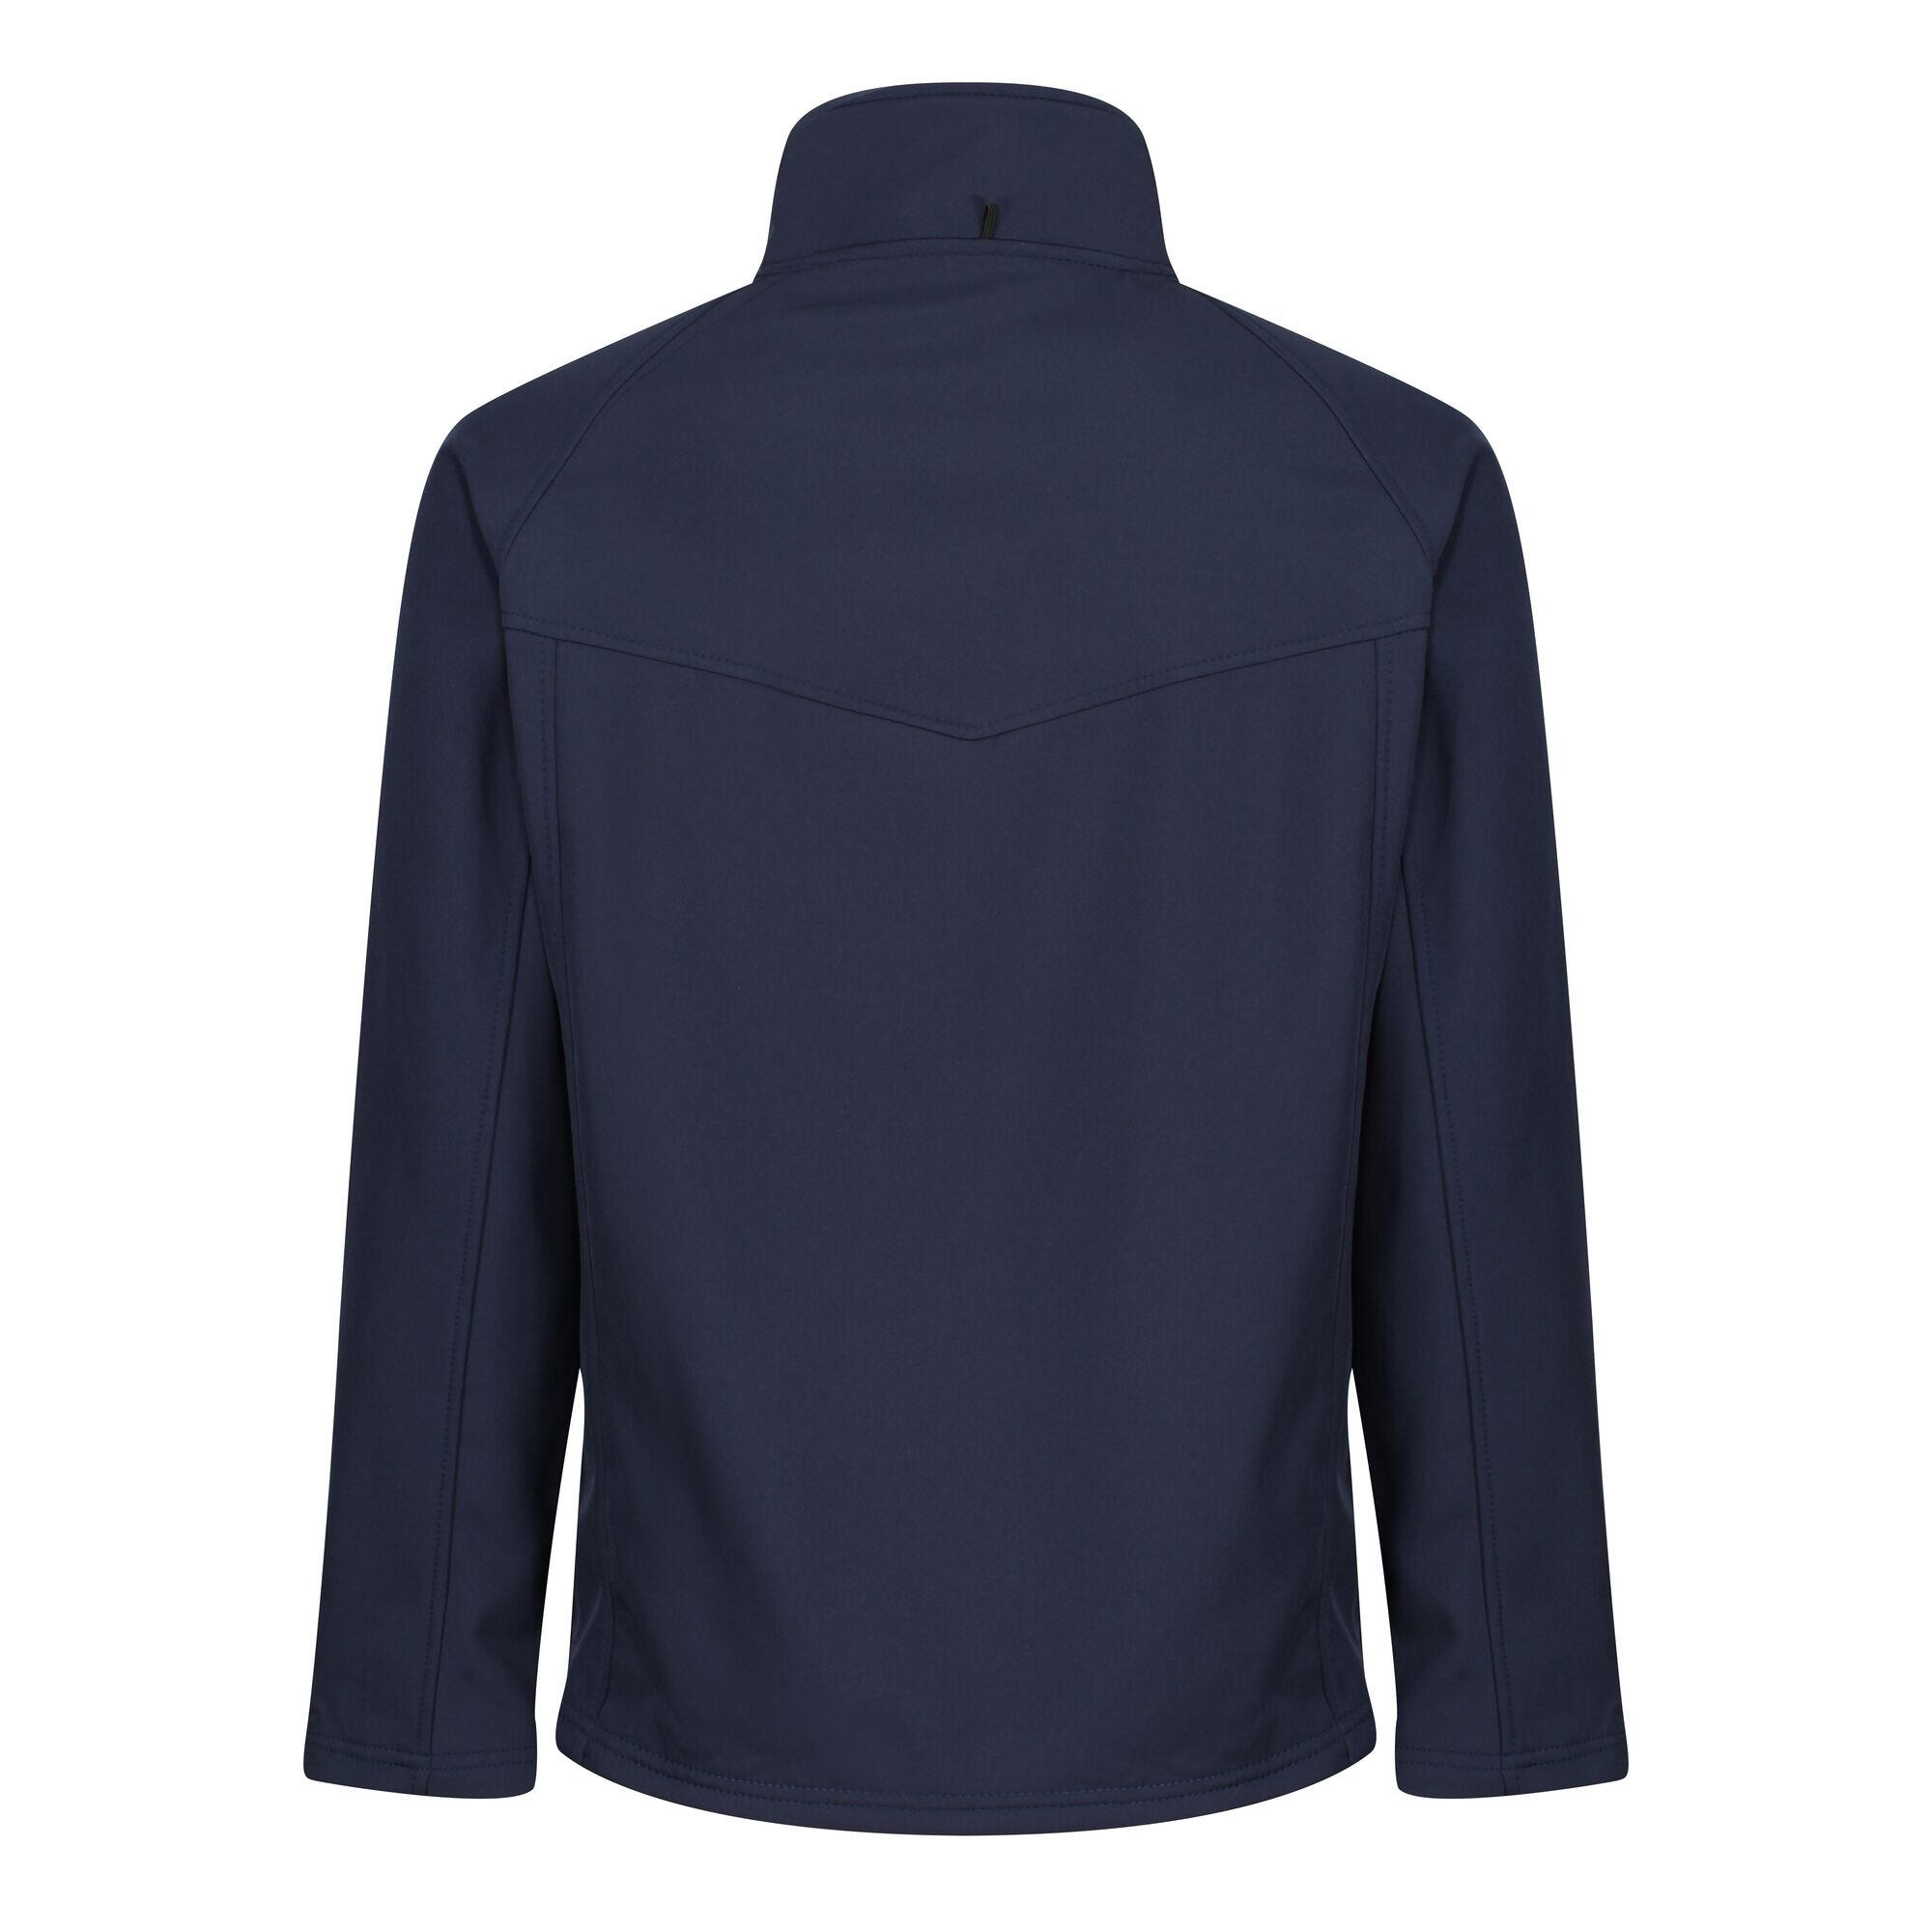 Mens Uproar Lightweight Wind Resistant Softshell Jacket (Navy/Navy) 2/4